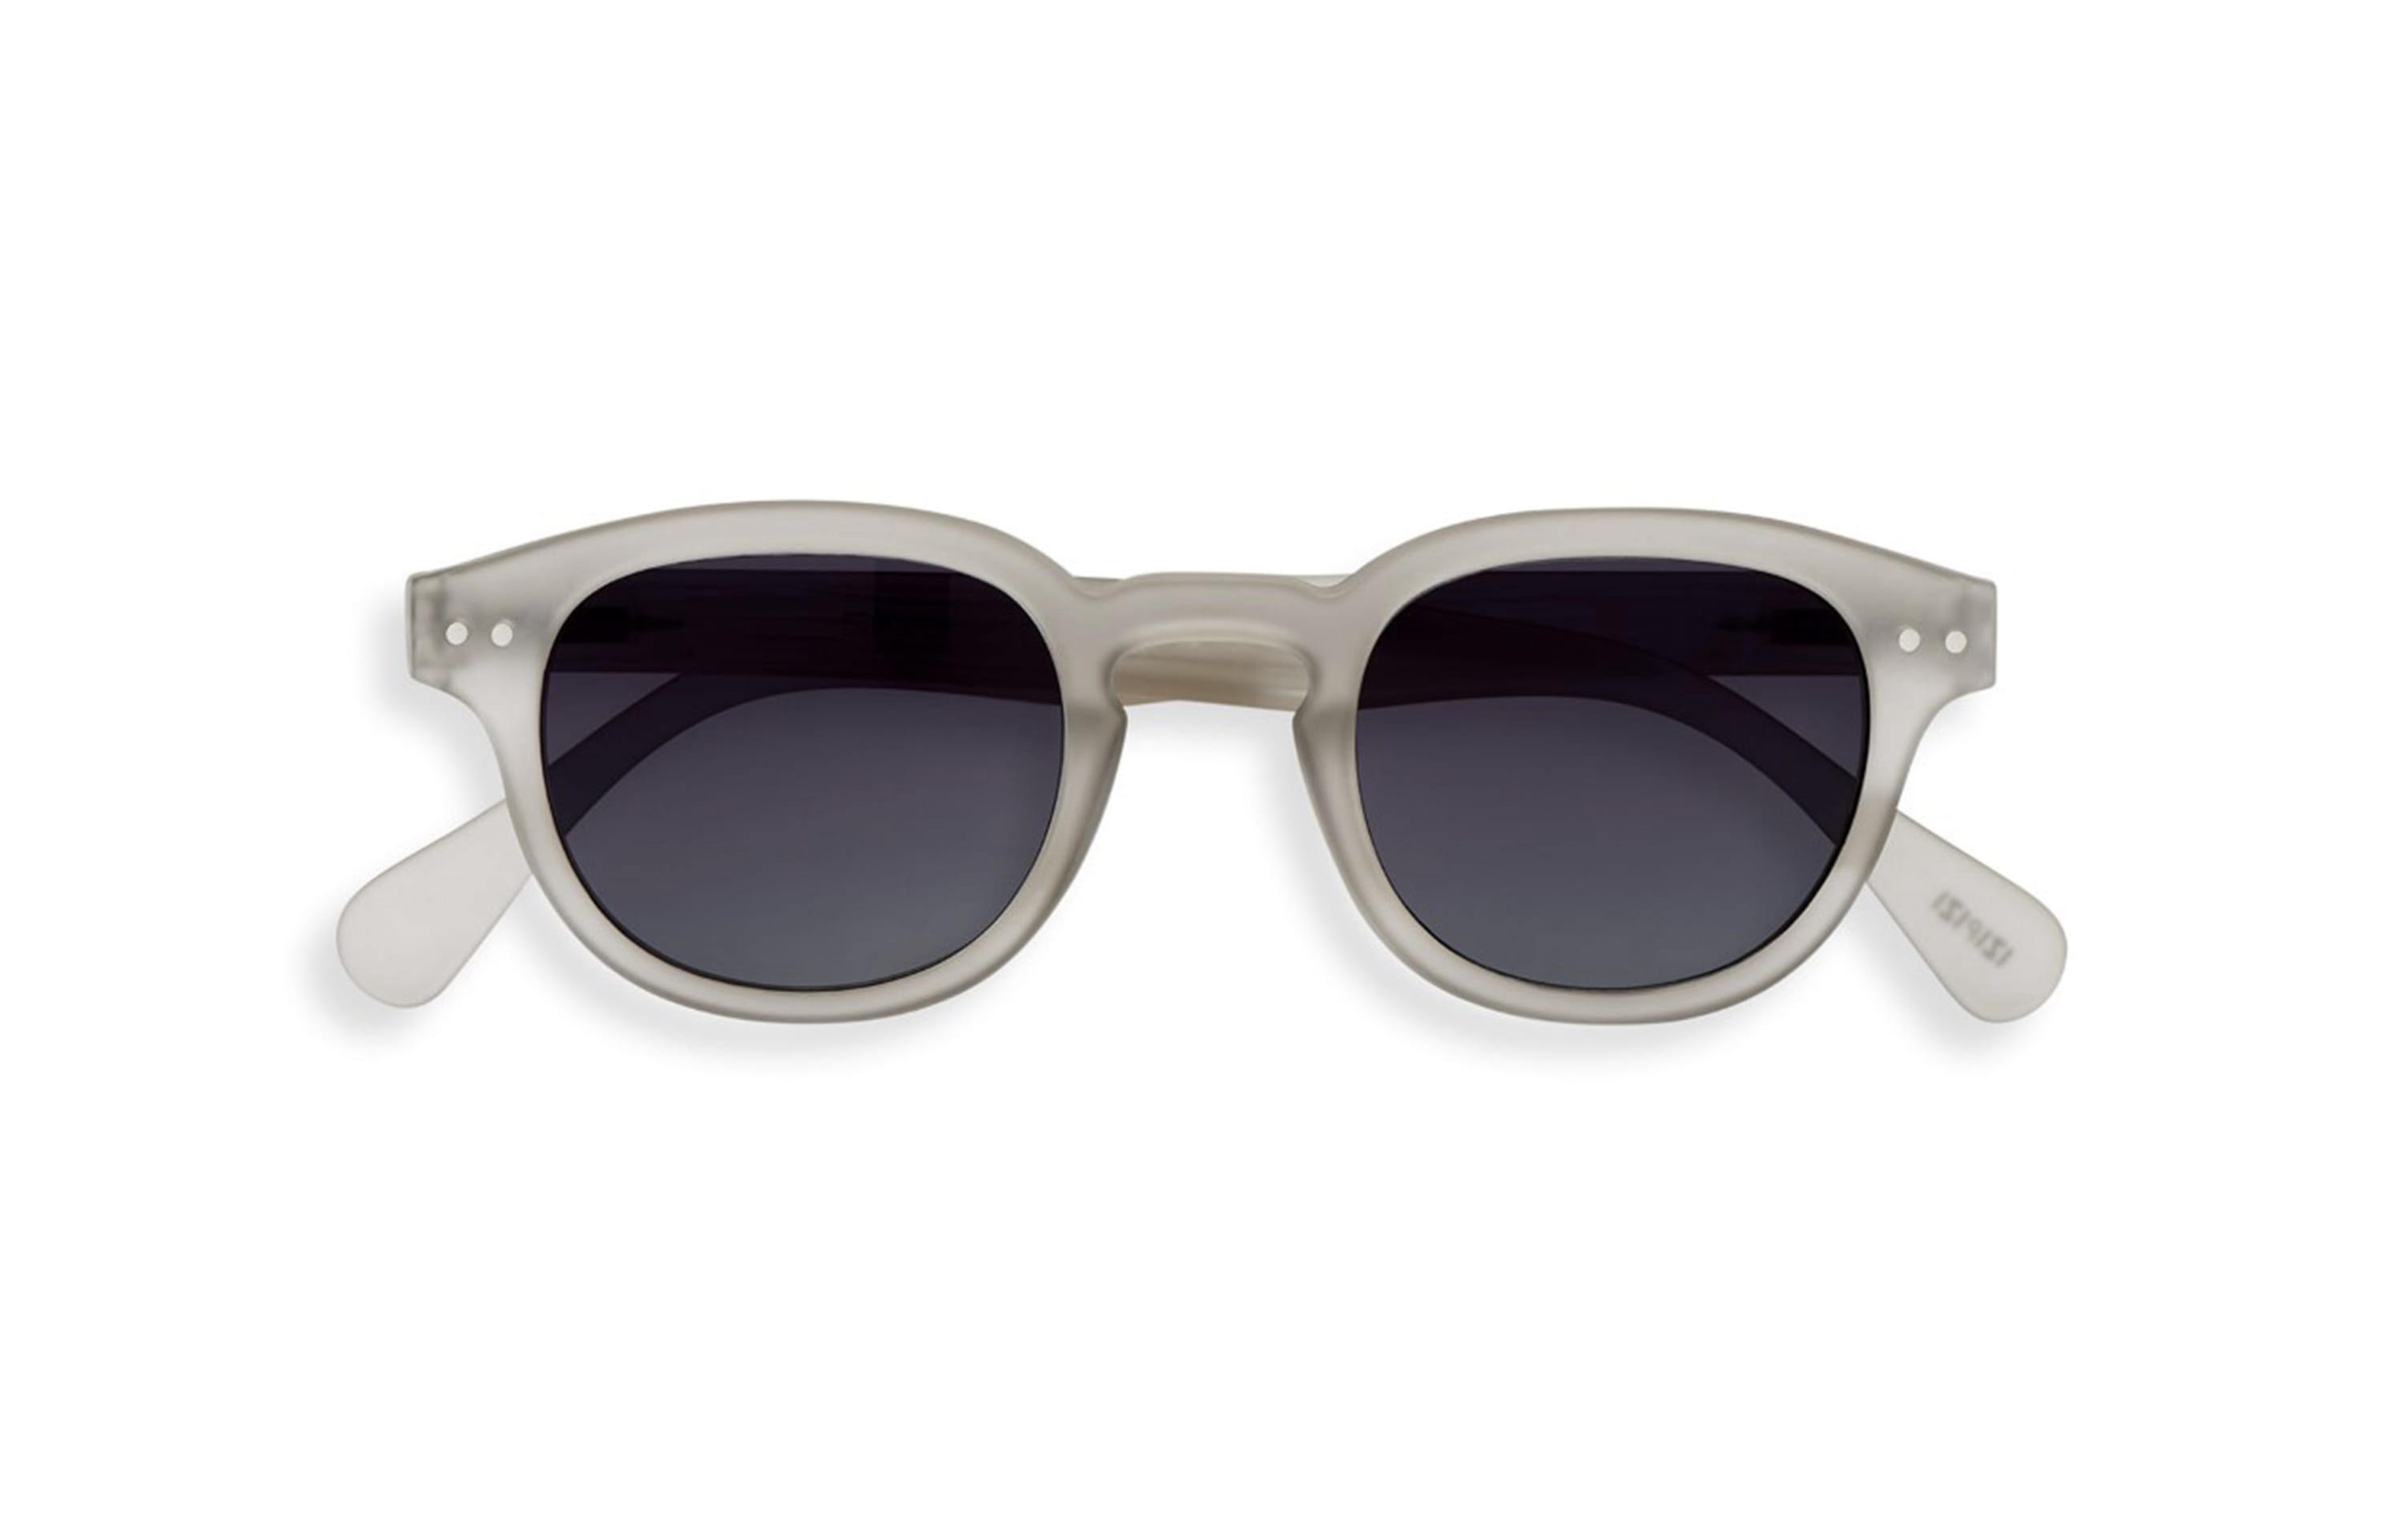 Management mild Departure for 10 marques de lunettes de soleil pour vos futures balades